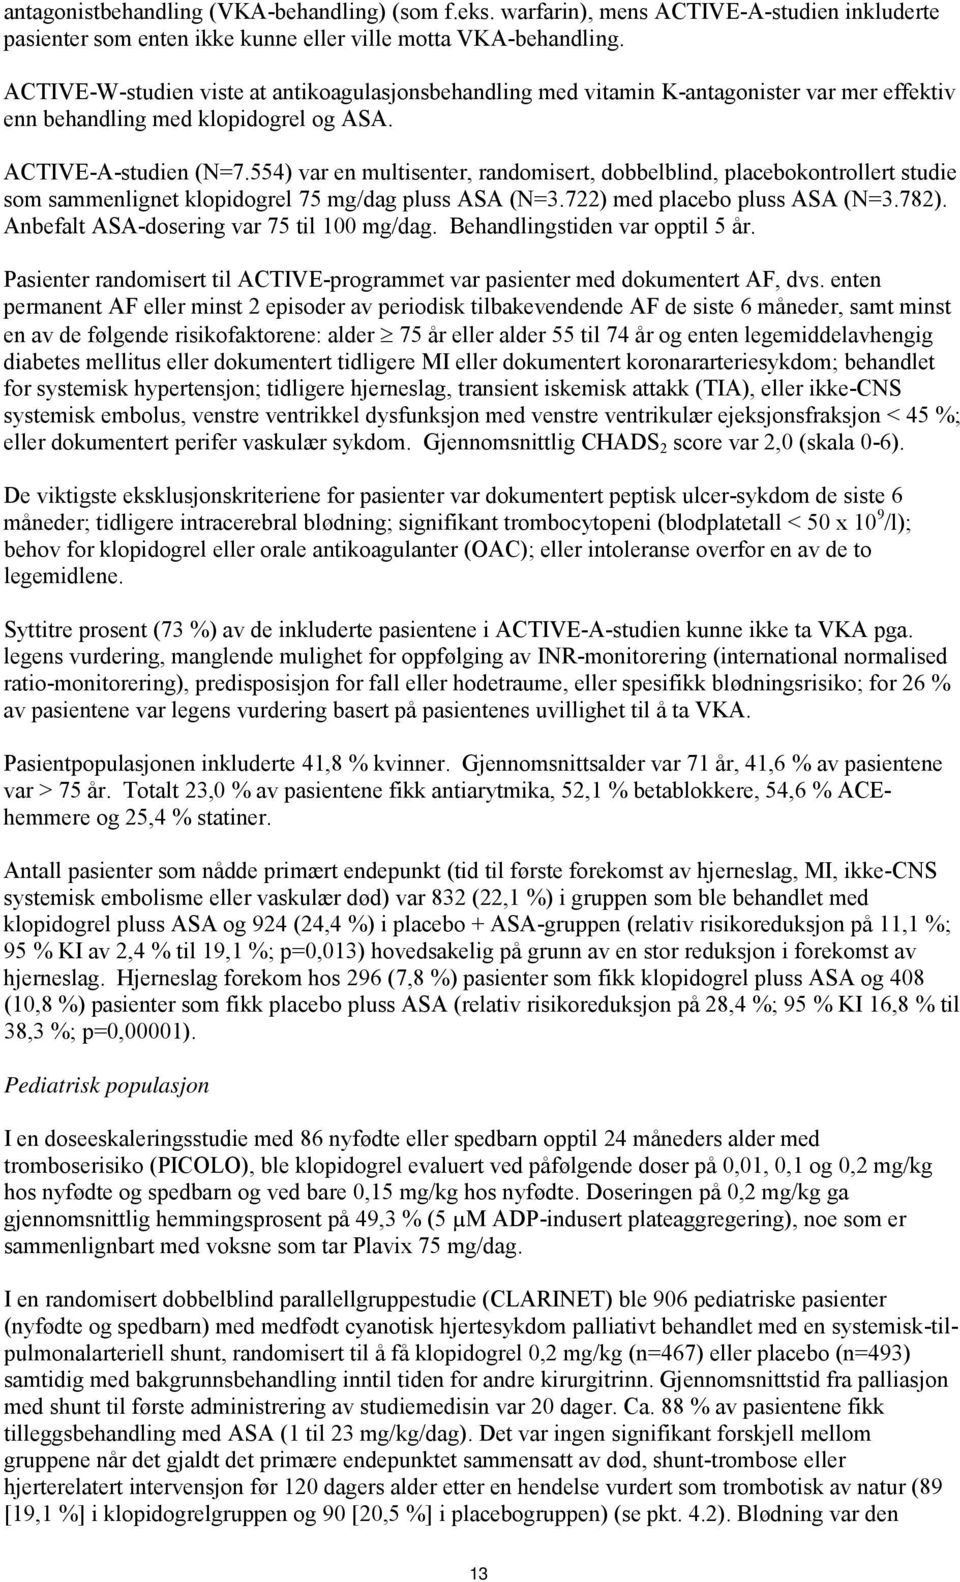 554) var en multisenter, randomisert, dobbelblind, placebokontrollert studie som sammenlignet klopidogrel 75 mg/dag pluss ASA (N=3.722) med placebo pluss ASA (N=3.782).